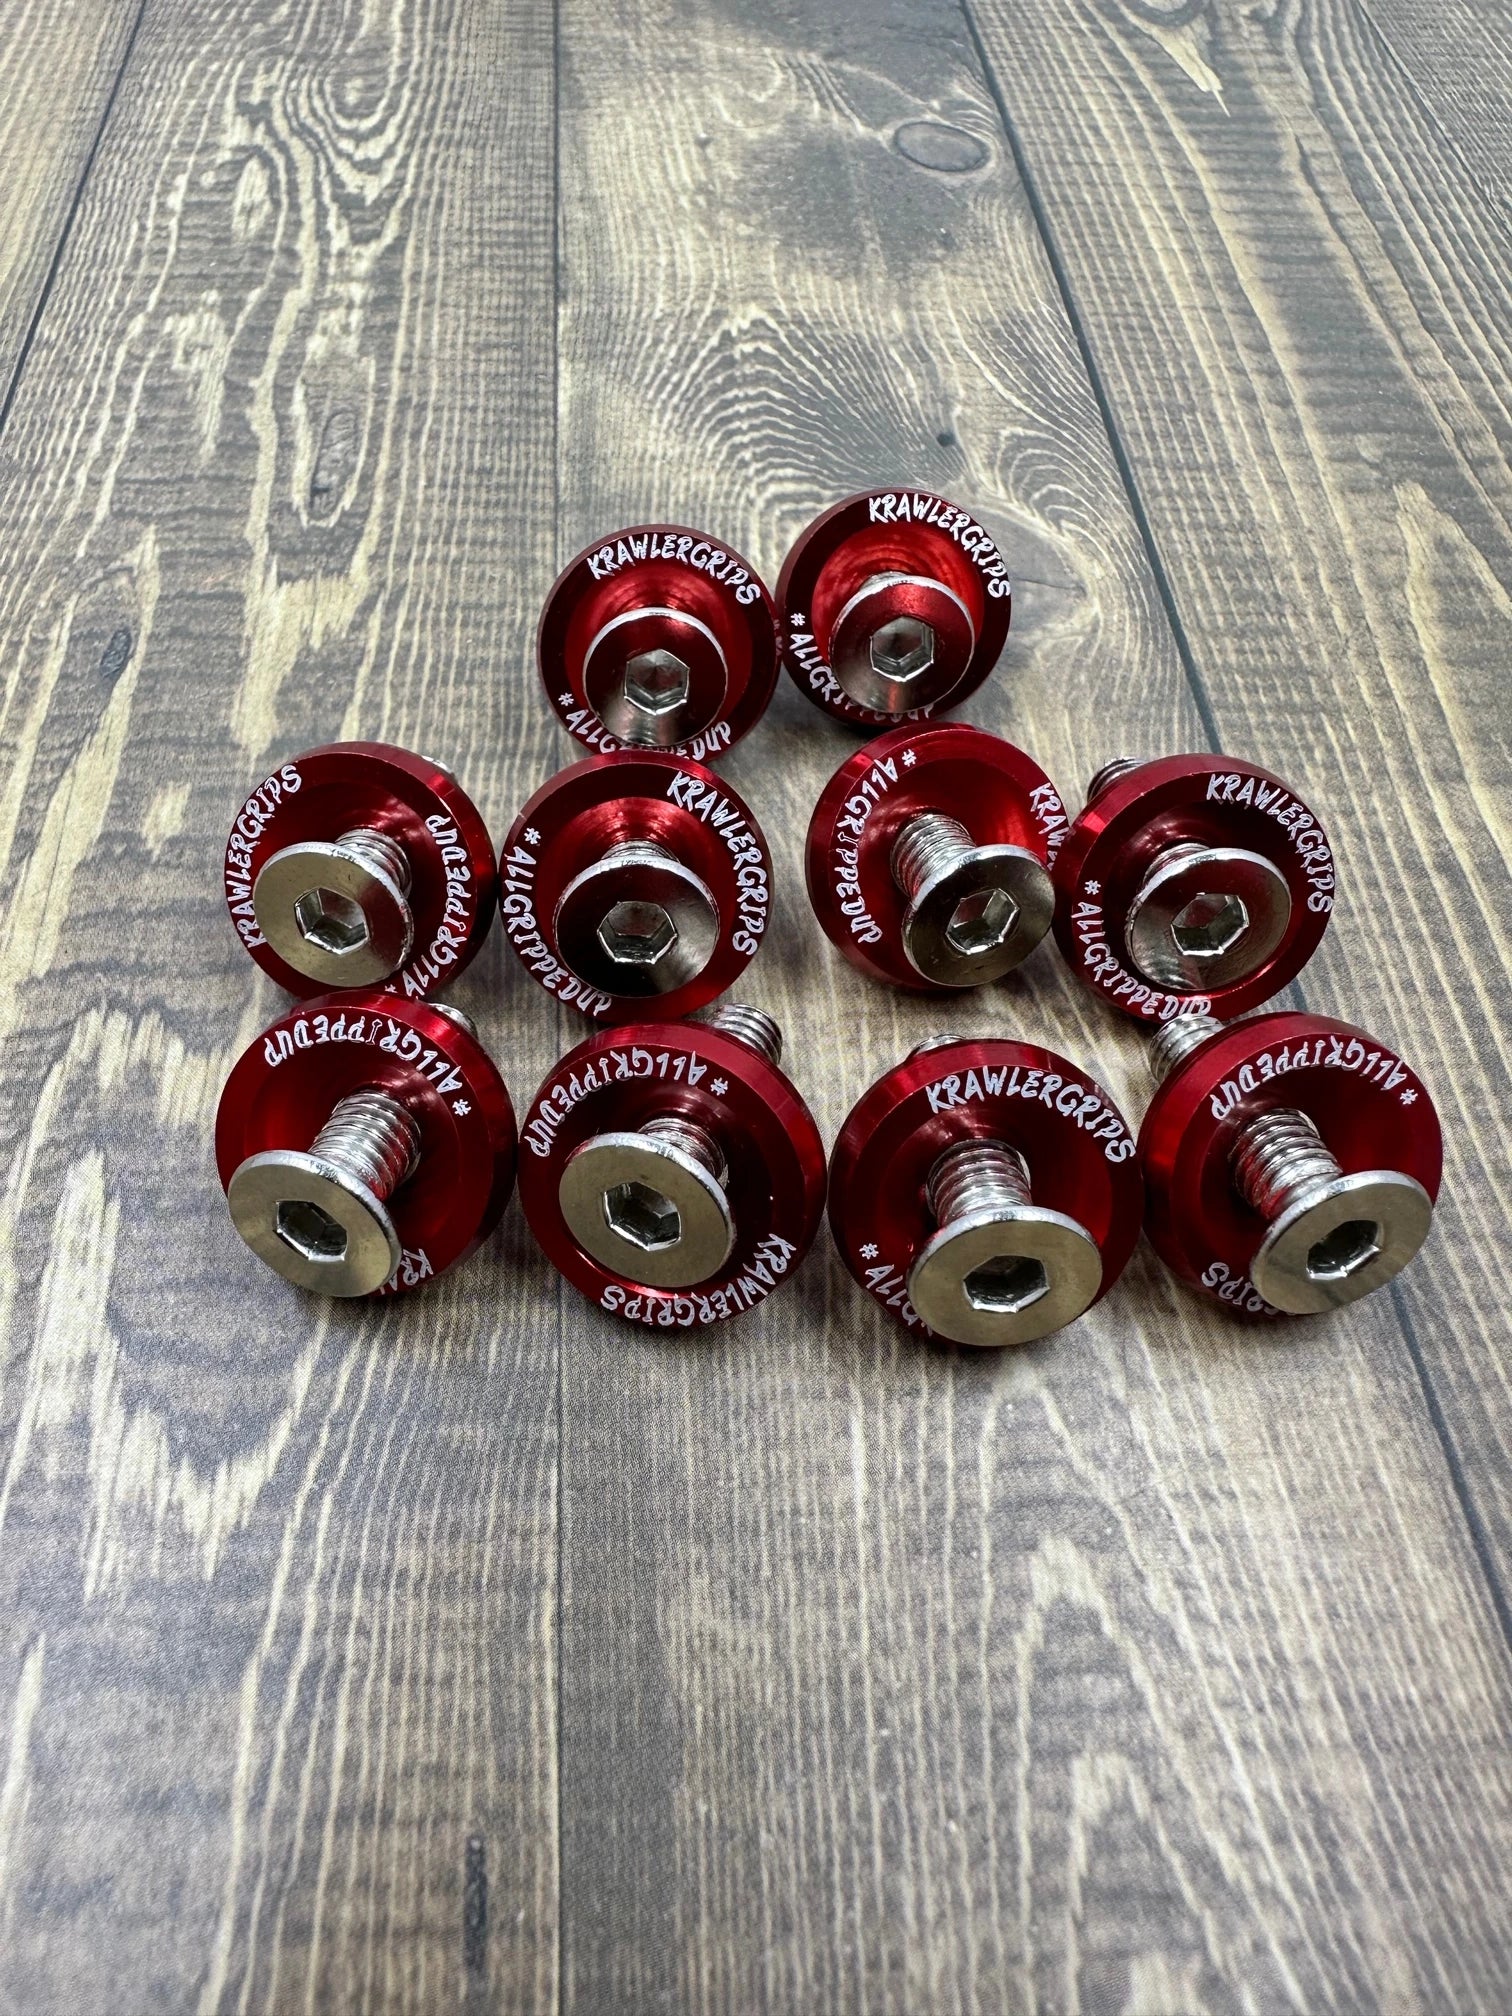 10 red washer jdm - krawlergrips